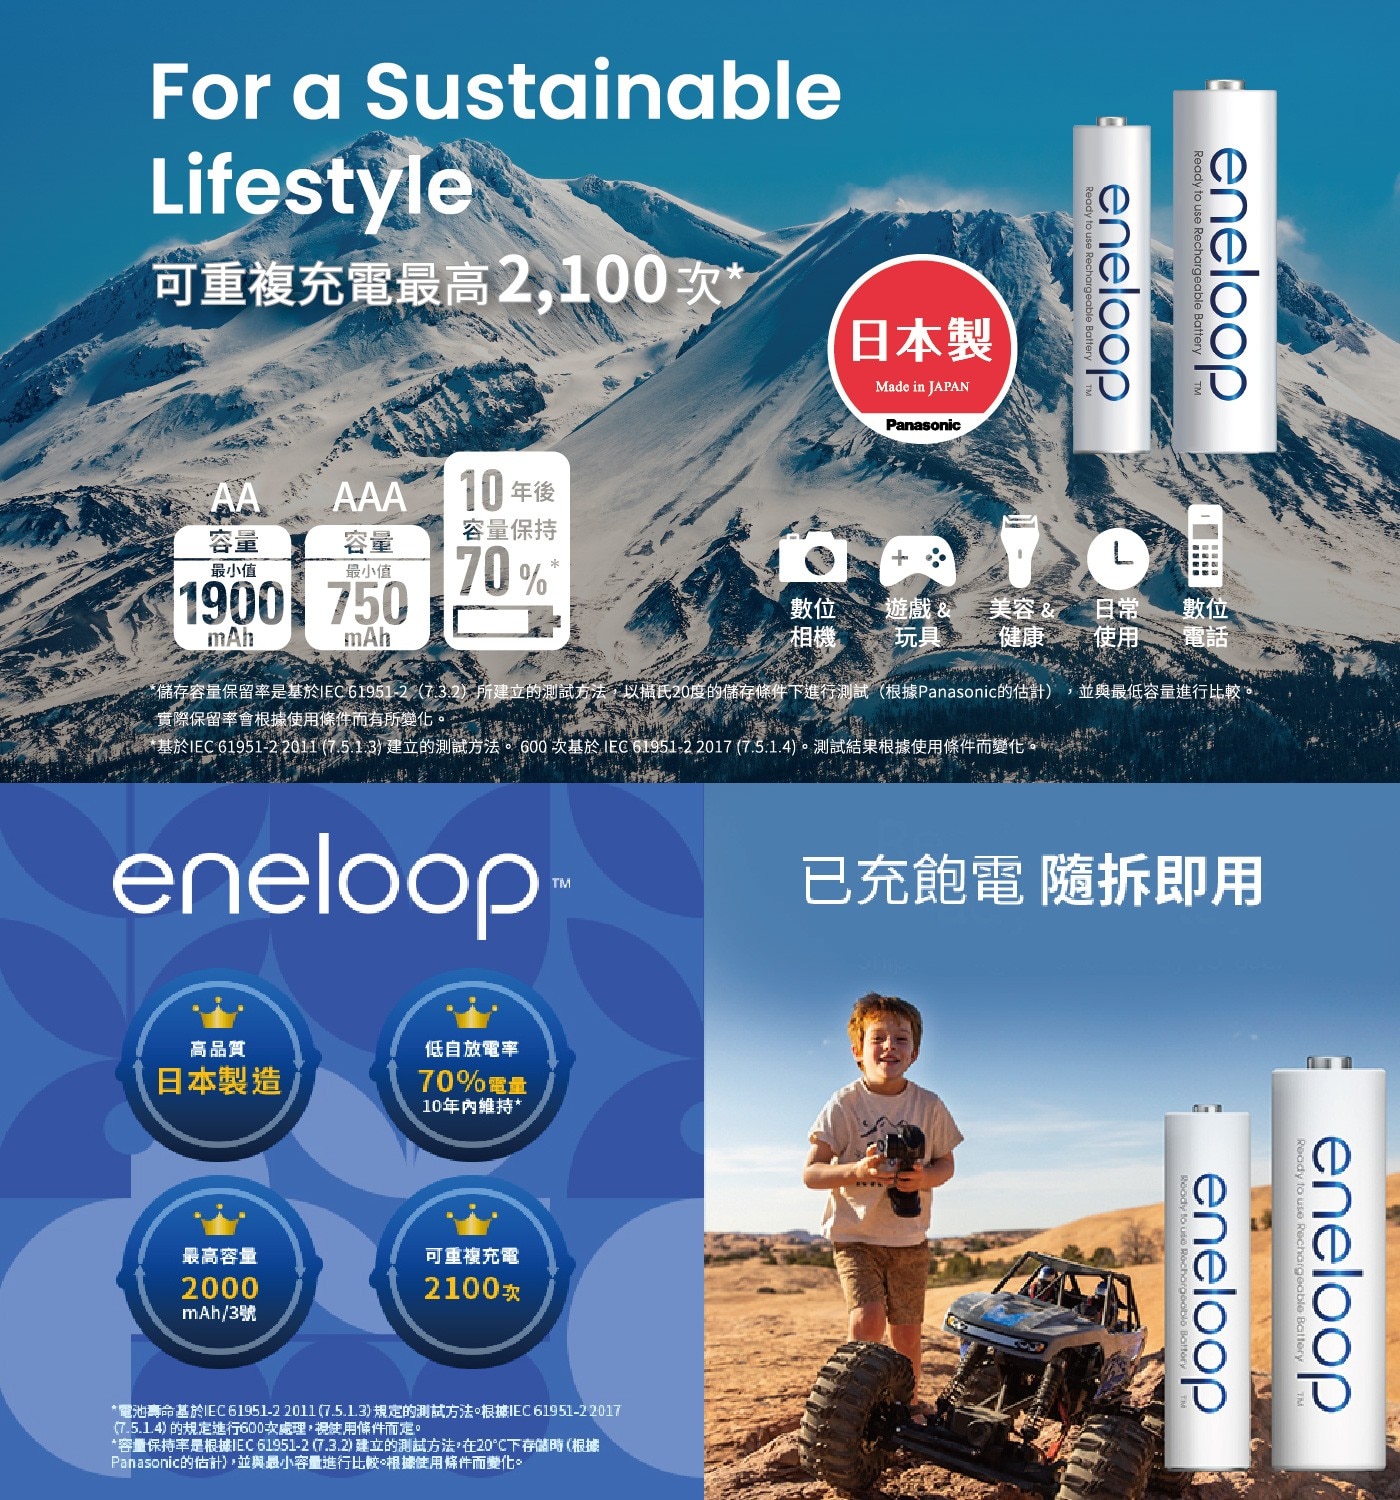 Panasonic Eneloop 充電電池 10入，蓄電力長達 10 年，可重複充電使用 2100 次，省錢環保。